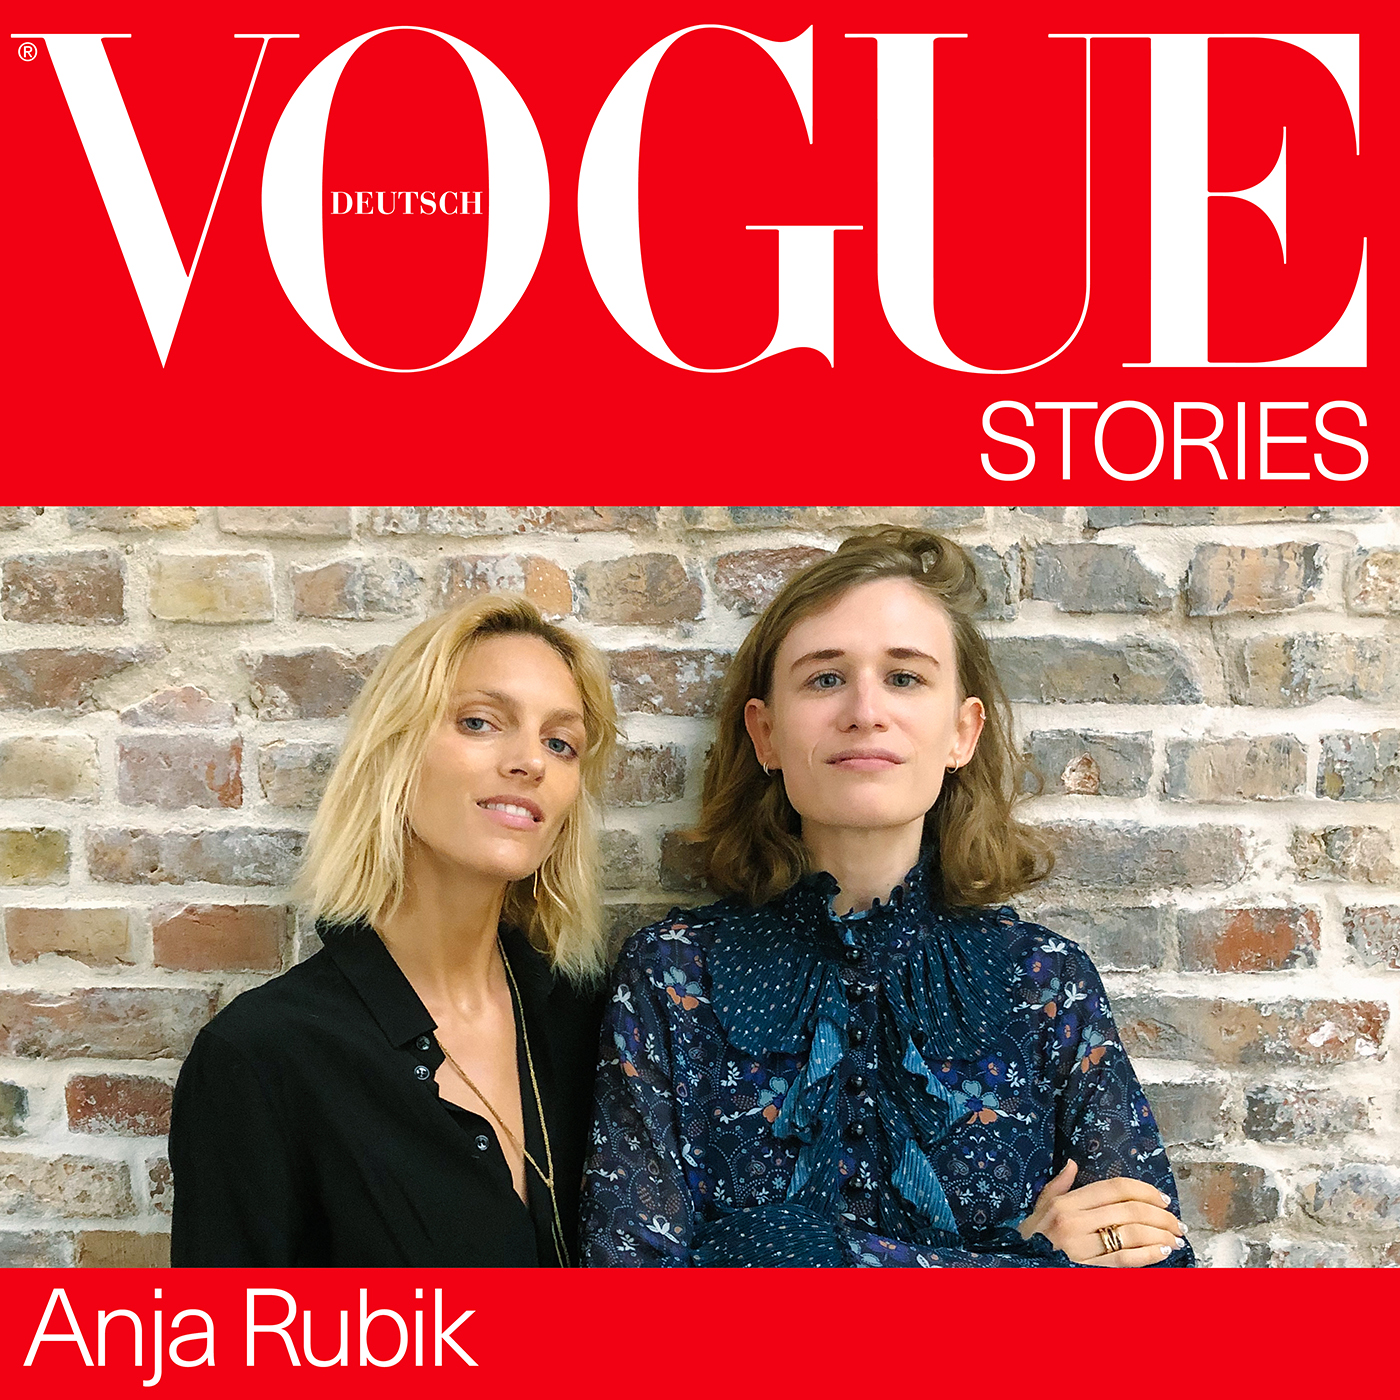 Anja Rubik, warum müssen wir mehr über Sex sprechen?